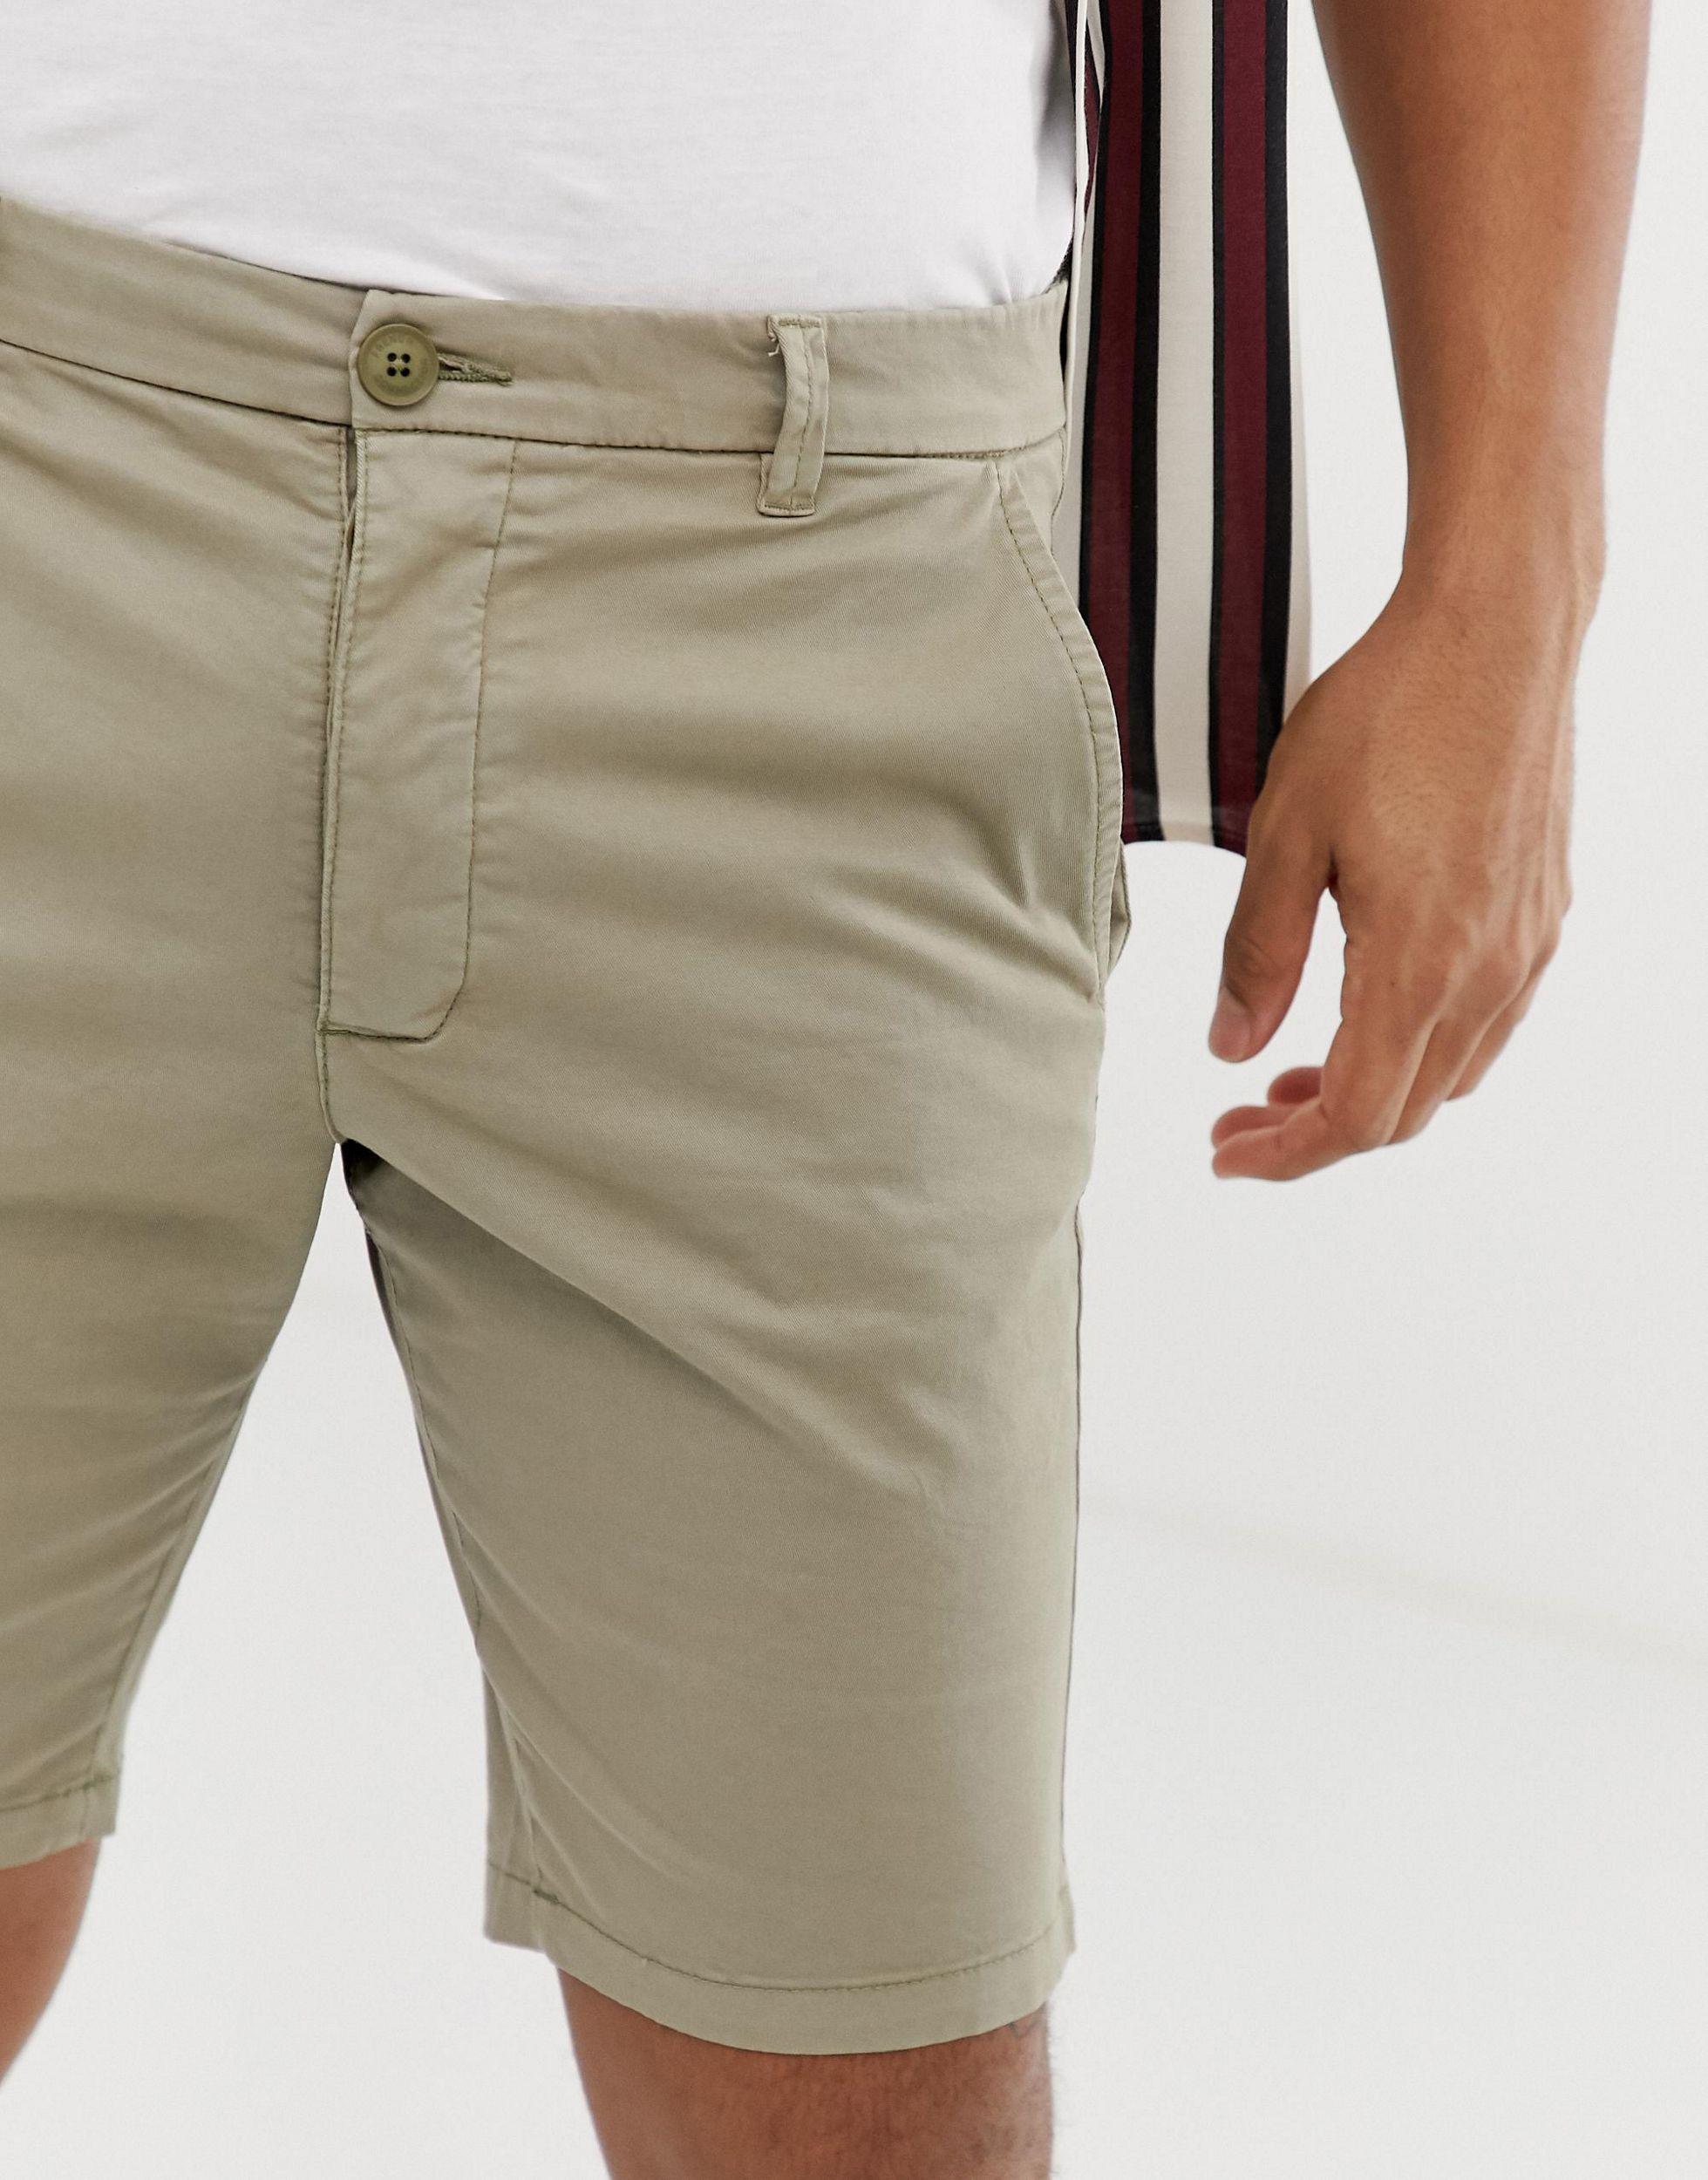 slim fitting shorts for men